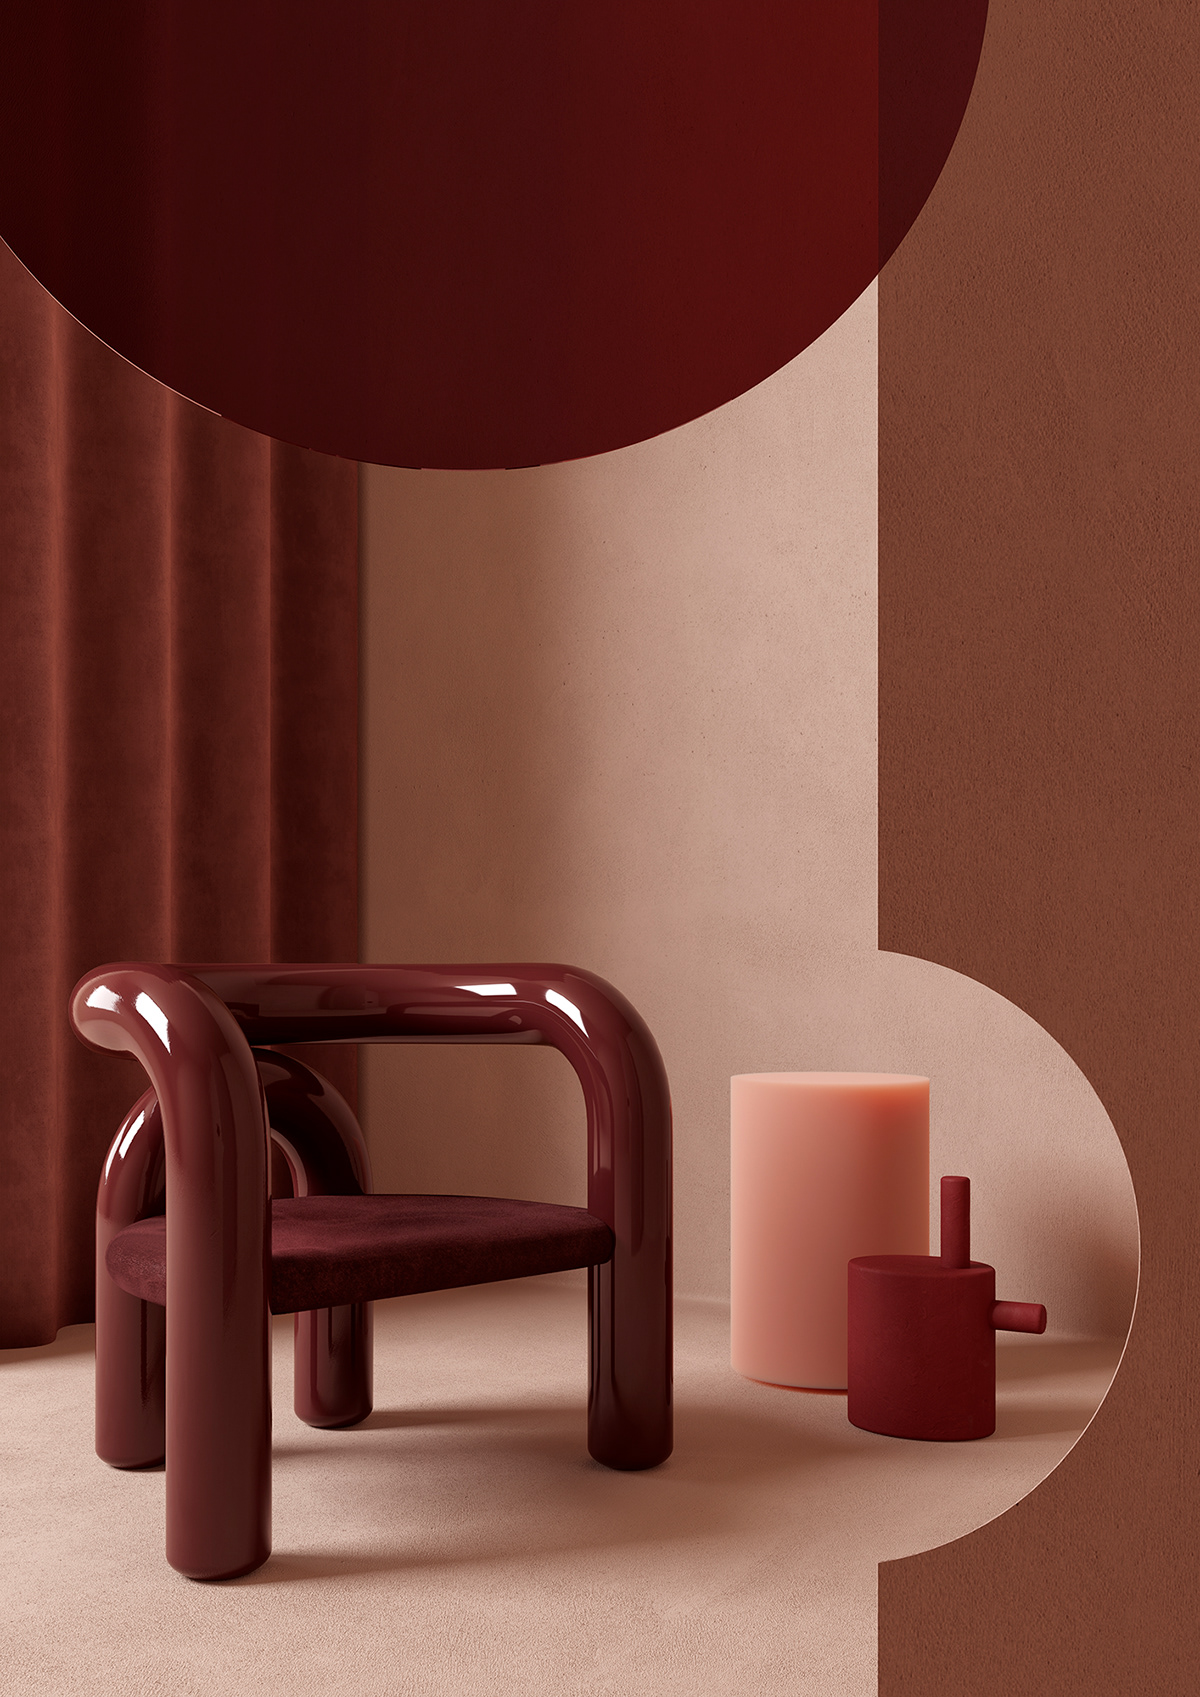 Une chaise en tube dans un intérieur aux tons rose et bordeaux